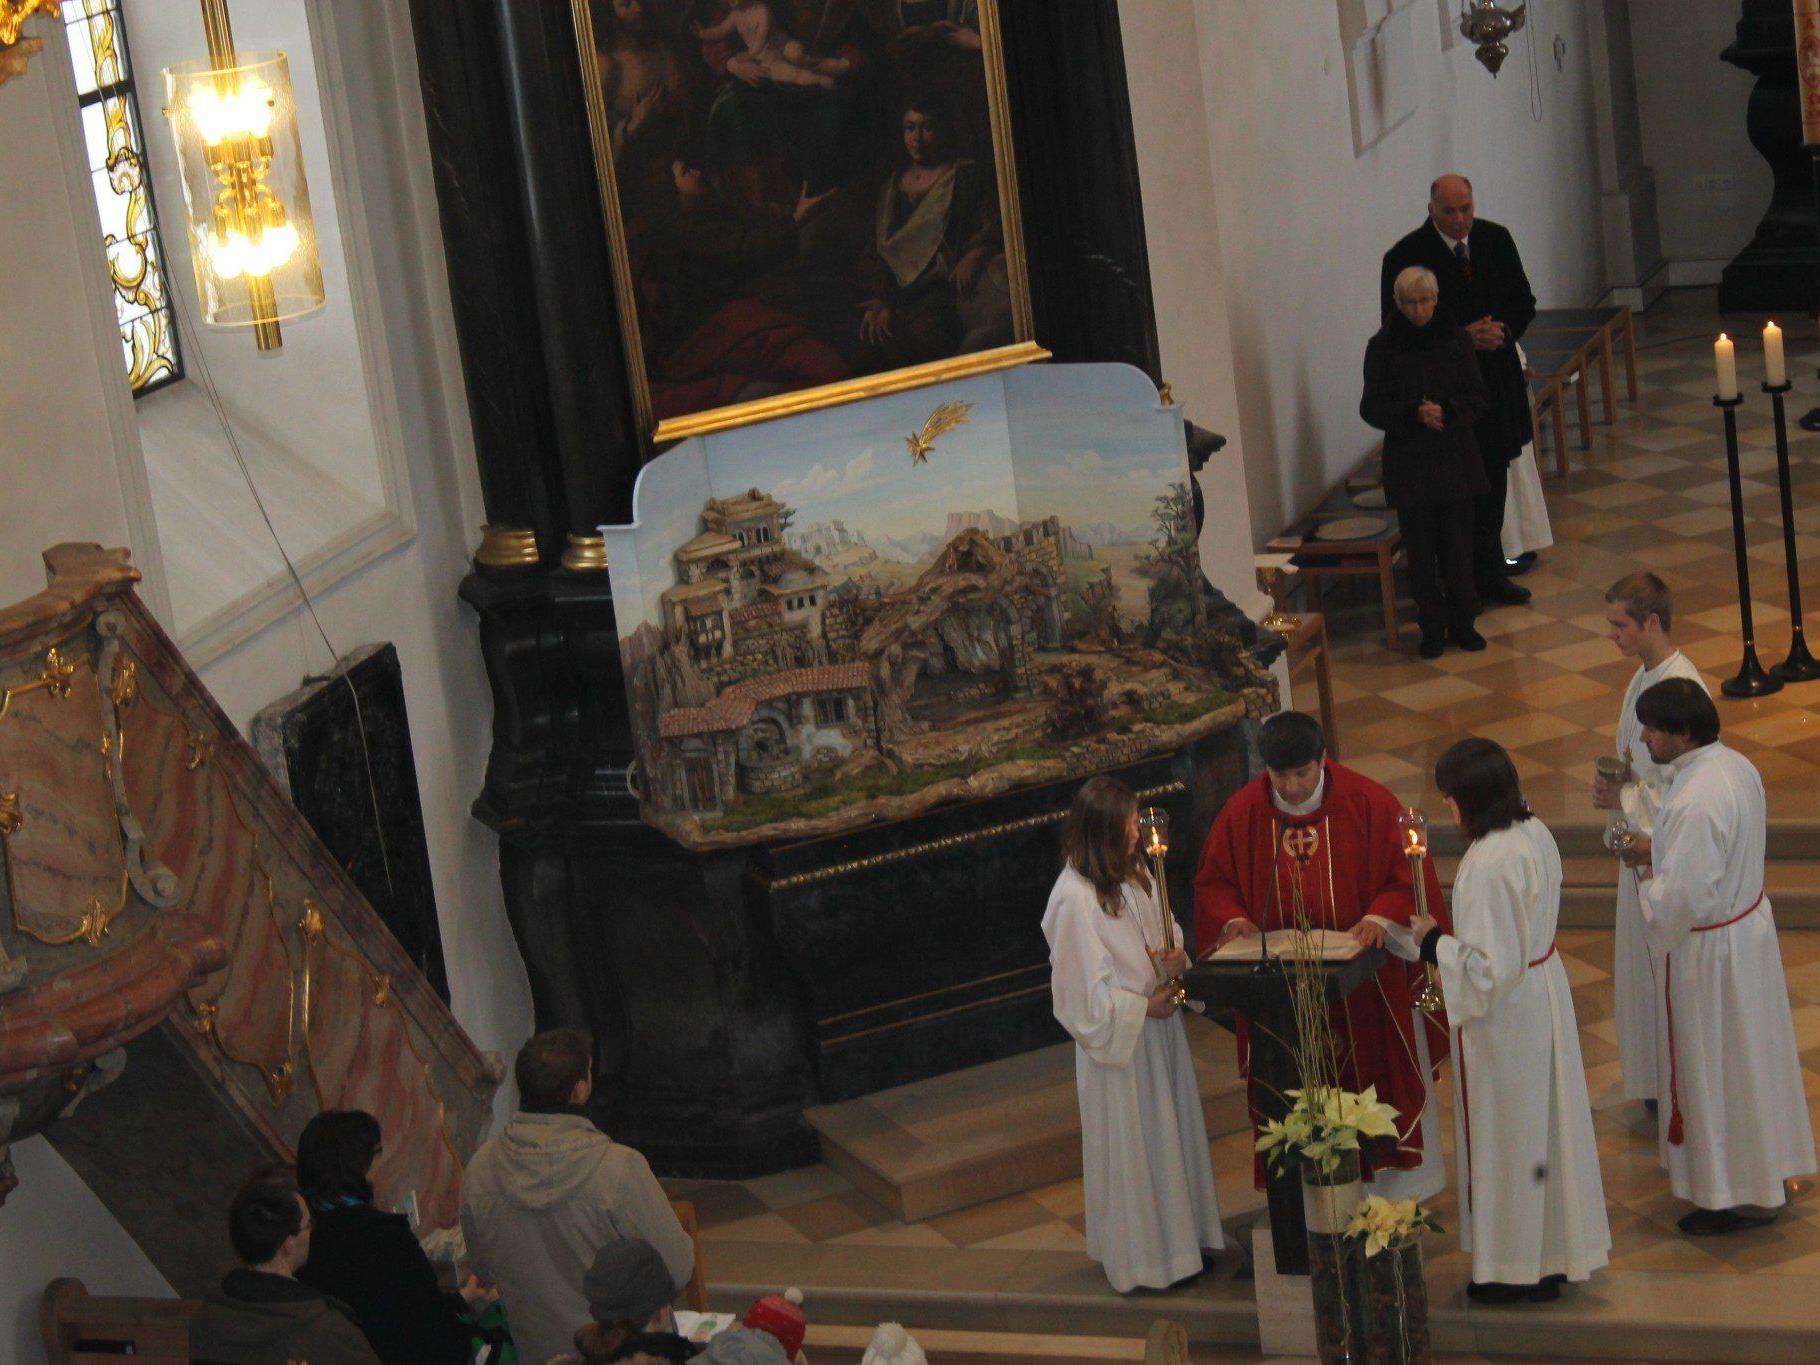 In der Pfarrkirche Ludesch wird eine festliche Adventfeier geboten